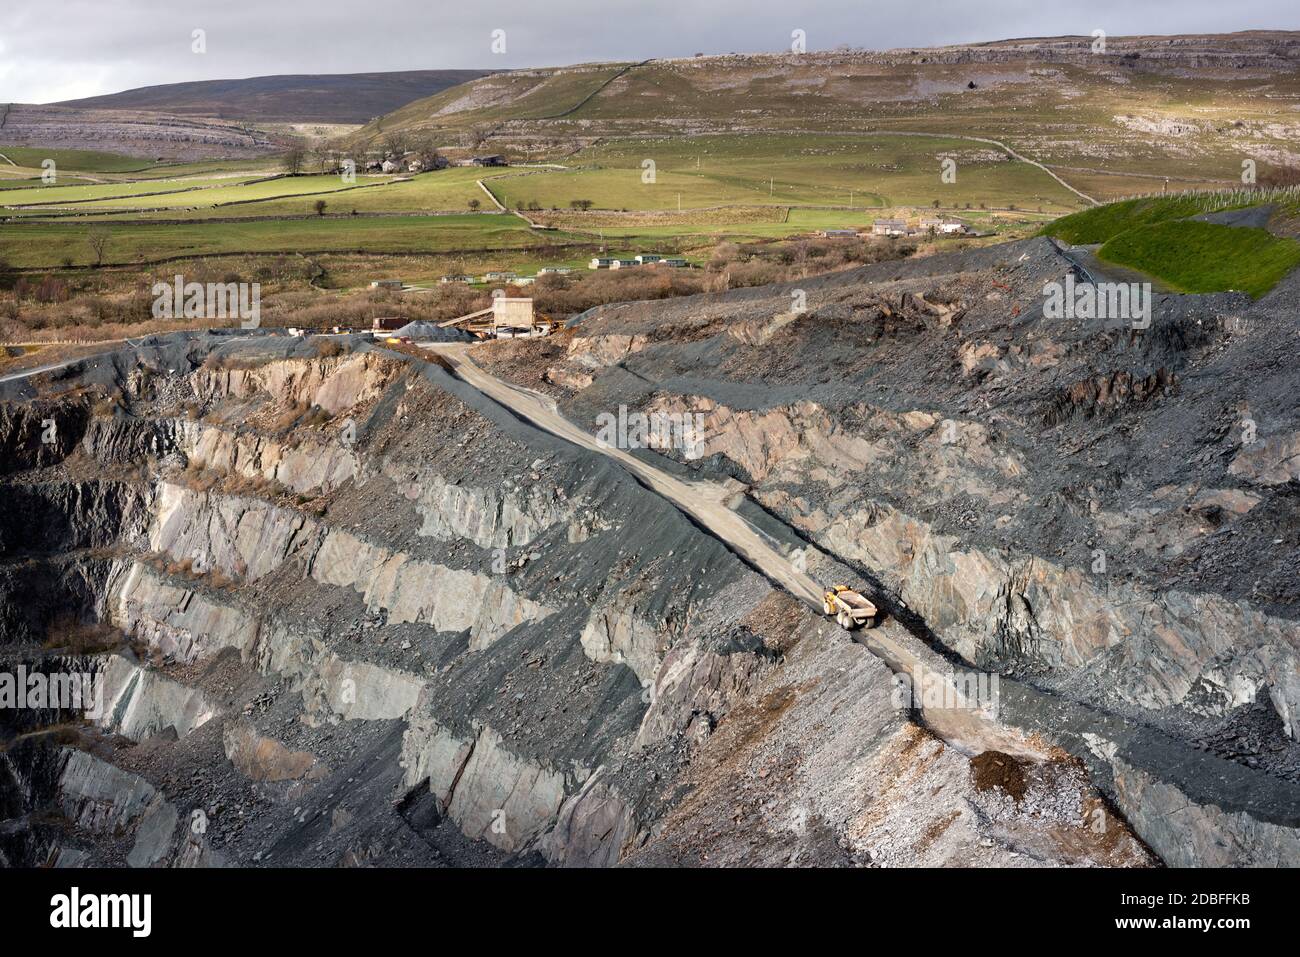 Ingleton Quarry, Yorkshire Dales National Park, visto dalla piattaforma di osservazione pubblica. Una cava di pietra dura (pietra grigiwacke) gestita da Hanson aggregati. Foto Stock